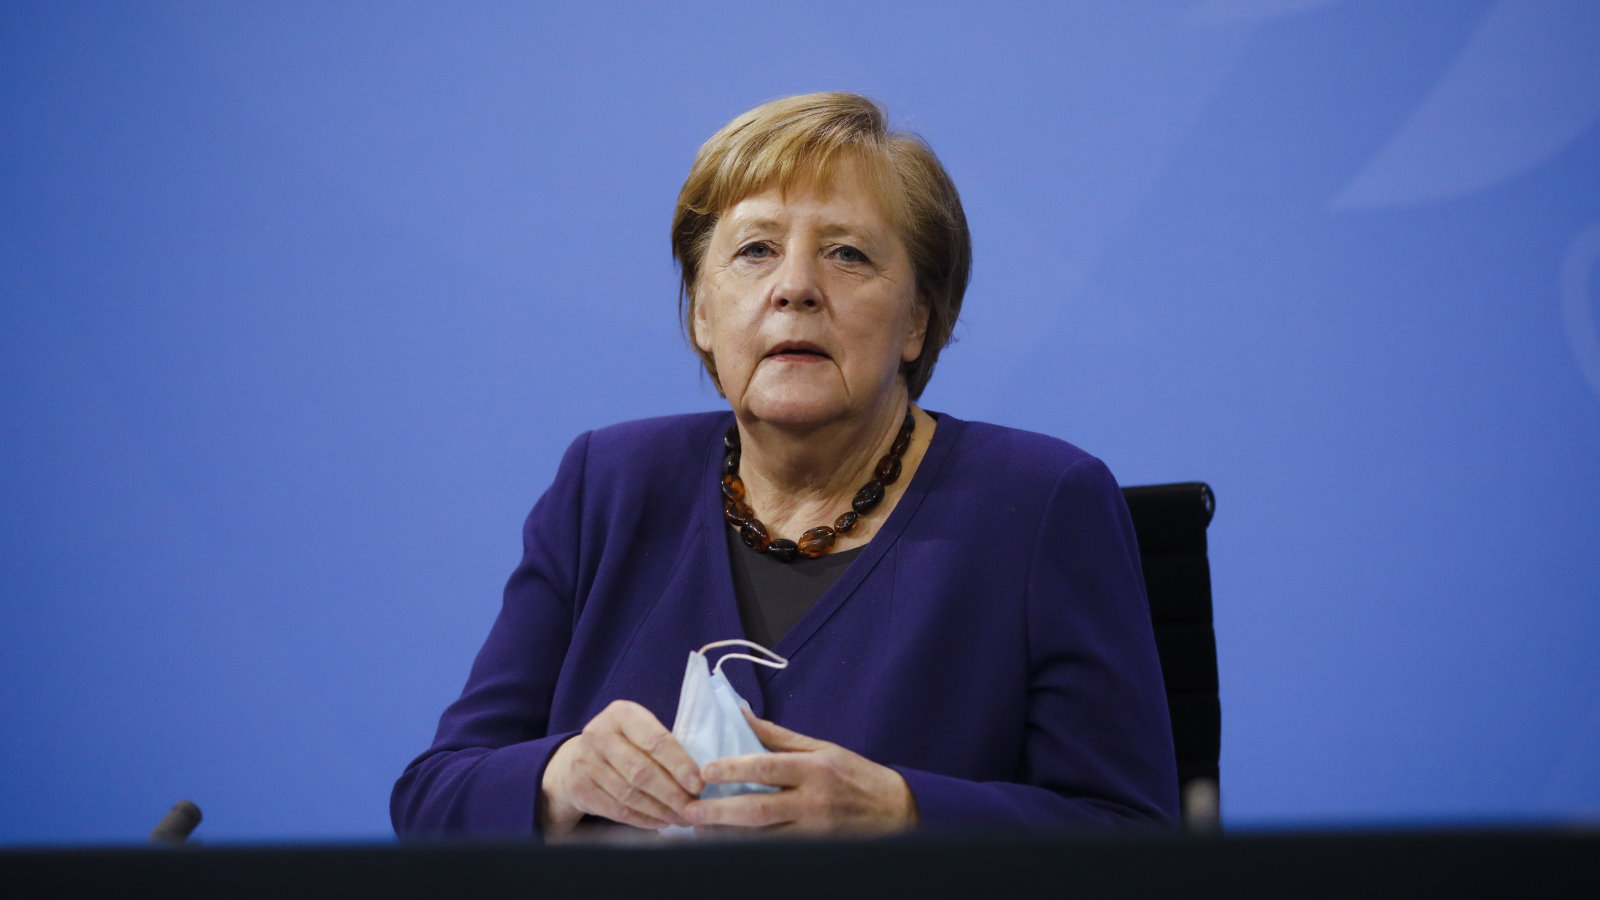 Меркель заявила о третьей волне пандемии коронавируса в Германии